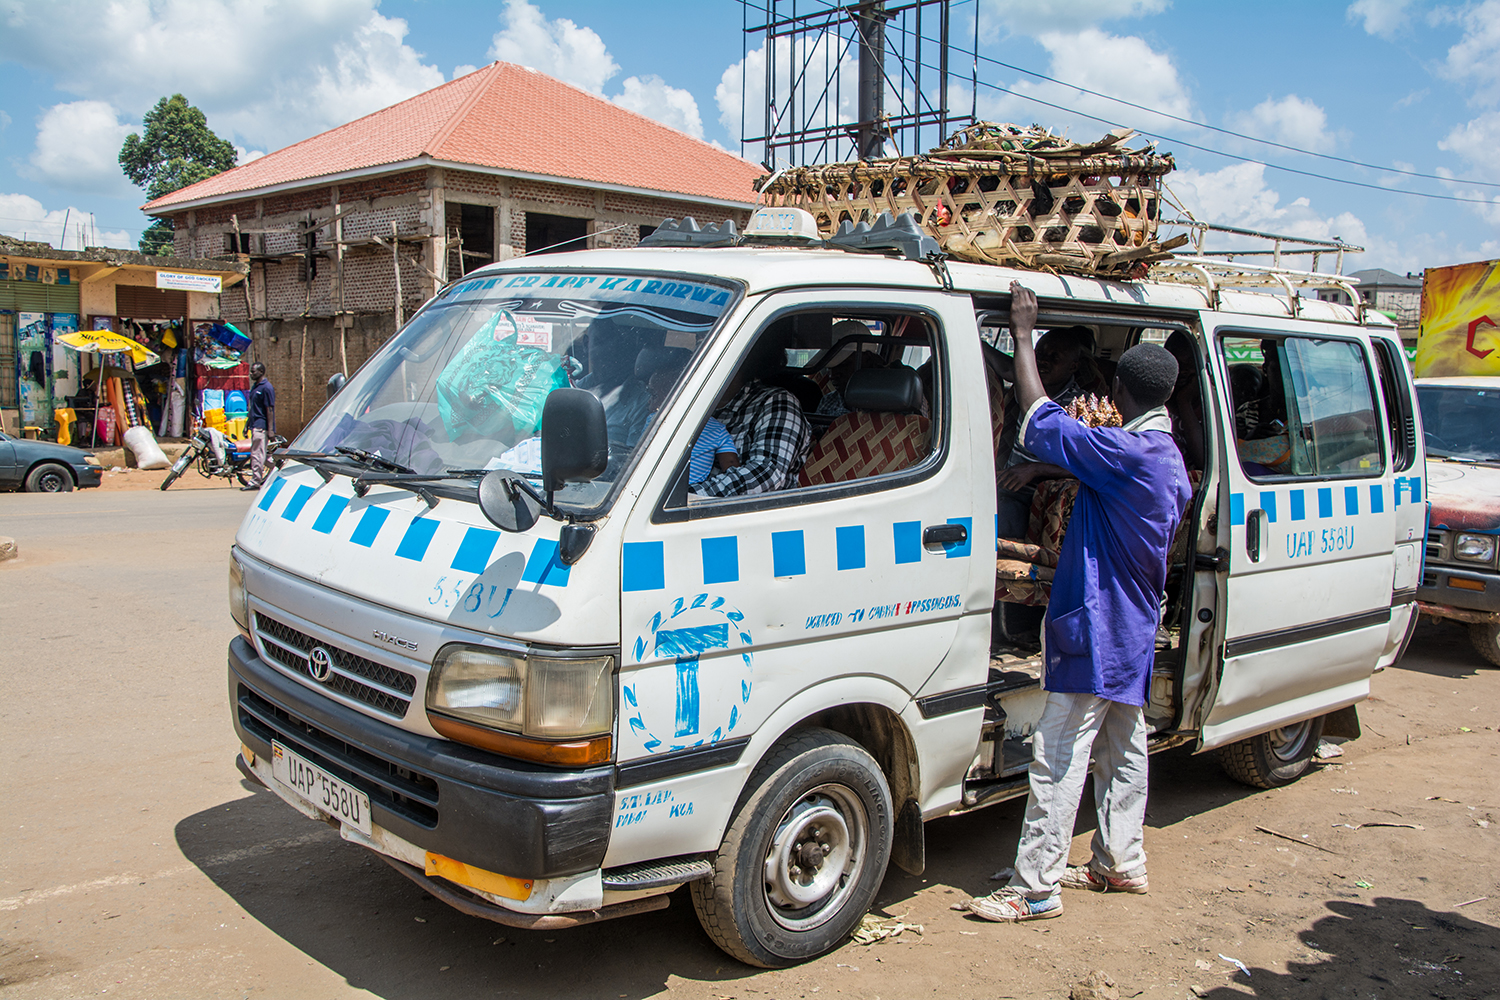 ウガンダのタクシー(マタツ)